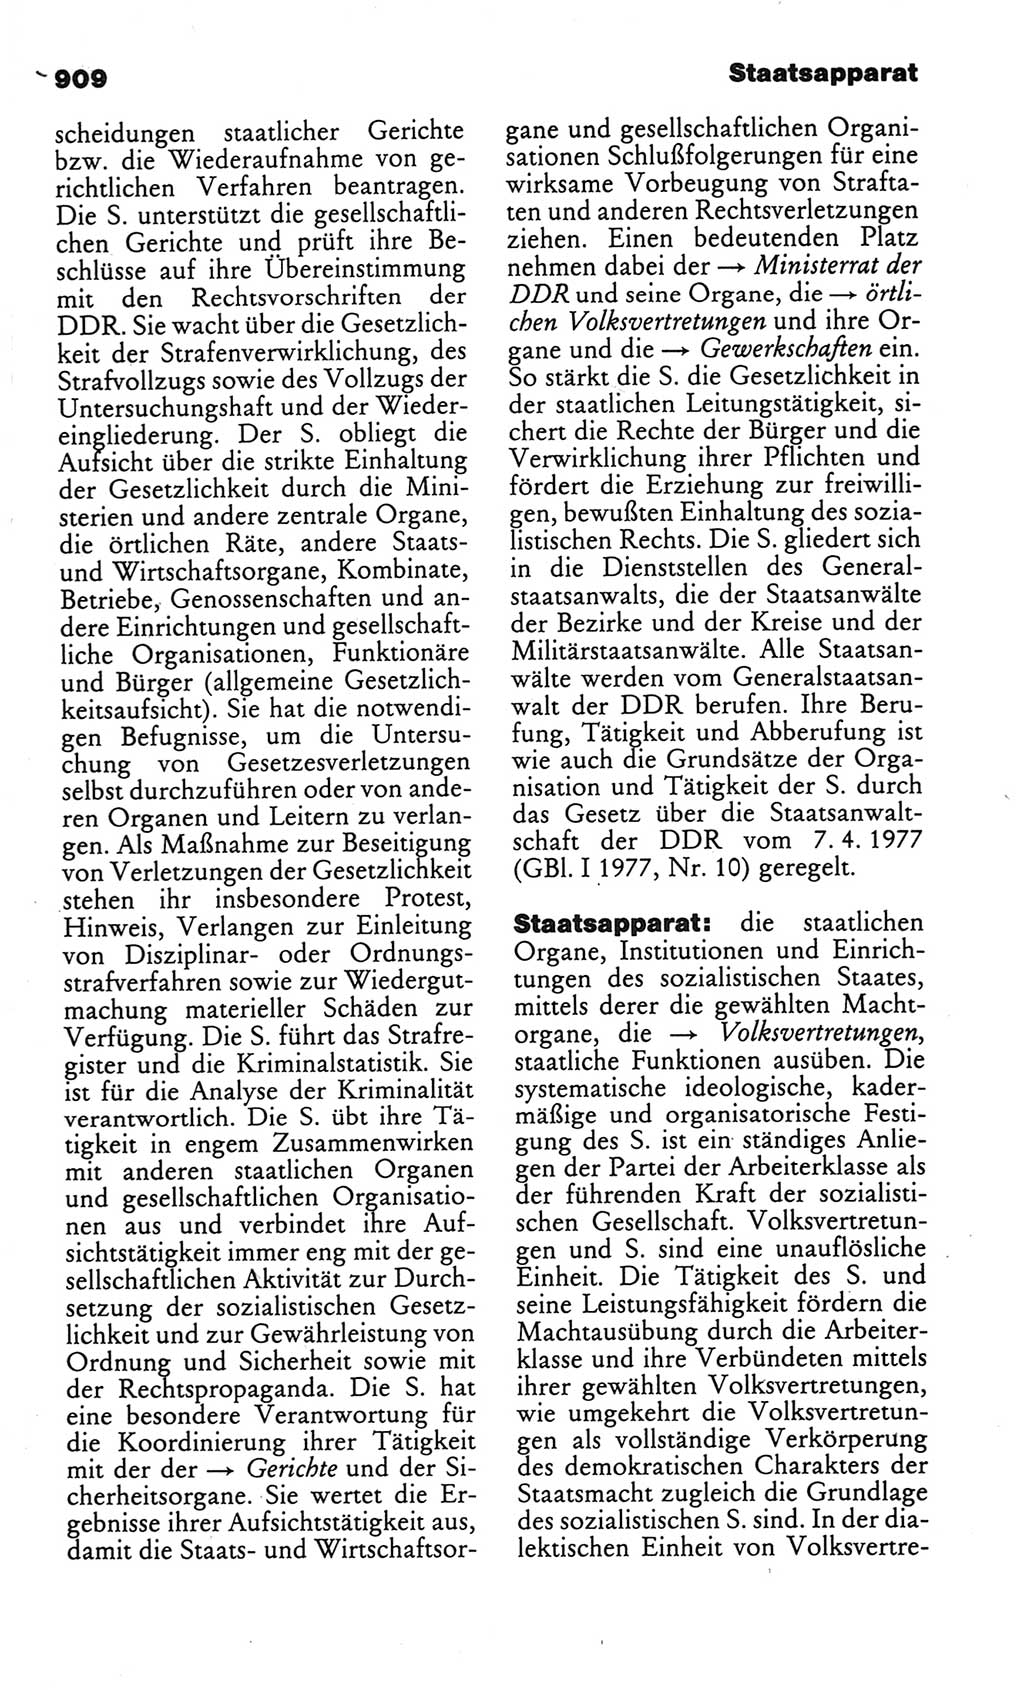 Kleines politisches Wörterbuch [Deutsche Demokratische Republik (DDR)] 1986, Seite 909 (Kl. pol. Wb. DDR 1986, S. 909)